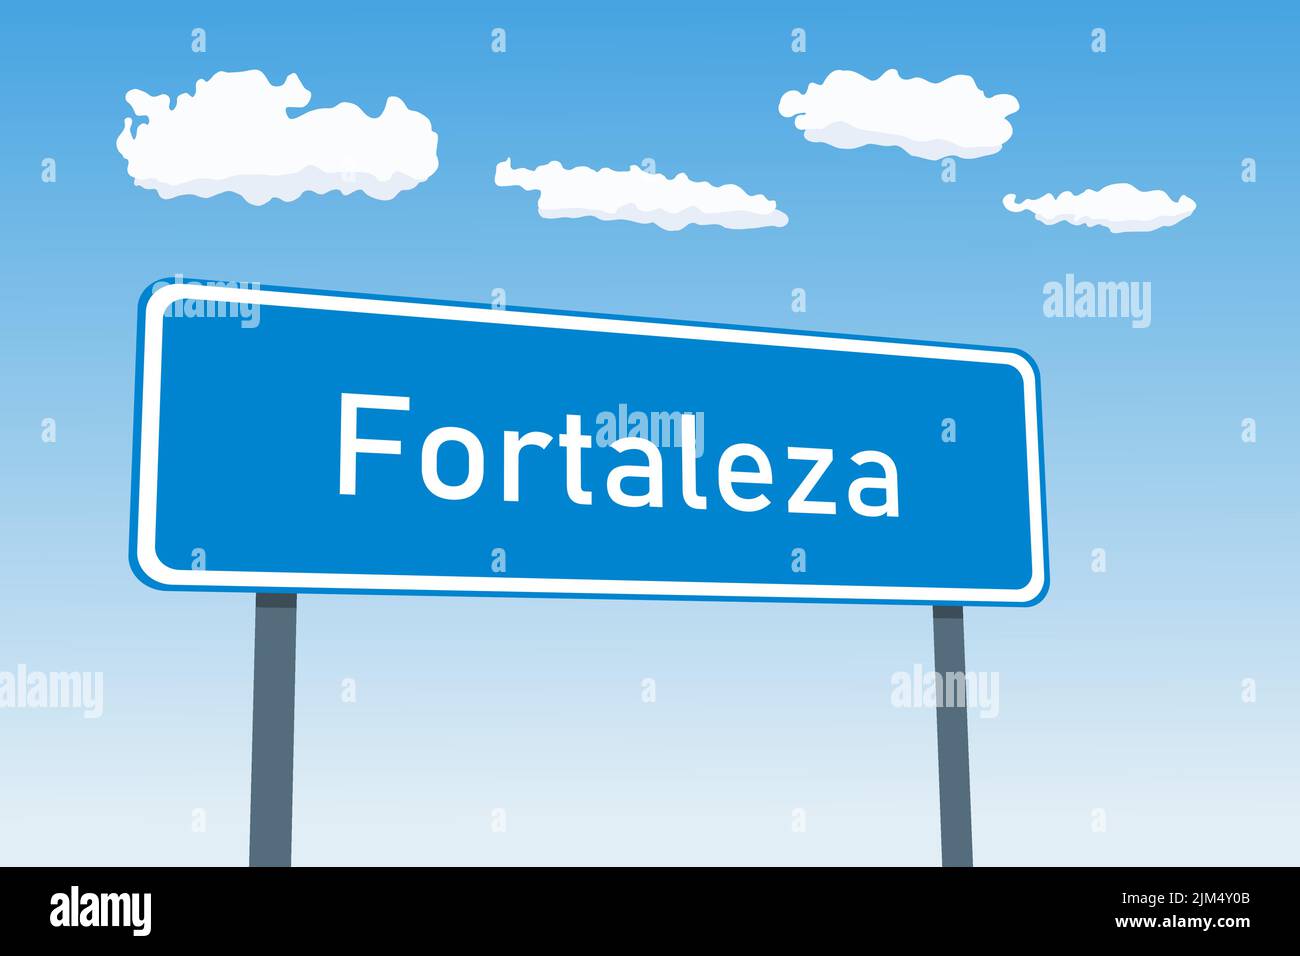 Signo de la ciudad de Fortaleza en Brasil. Señal de tráfico de bienvenida de límite de ciudad. Ilustración del Vector